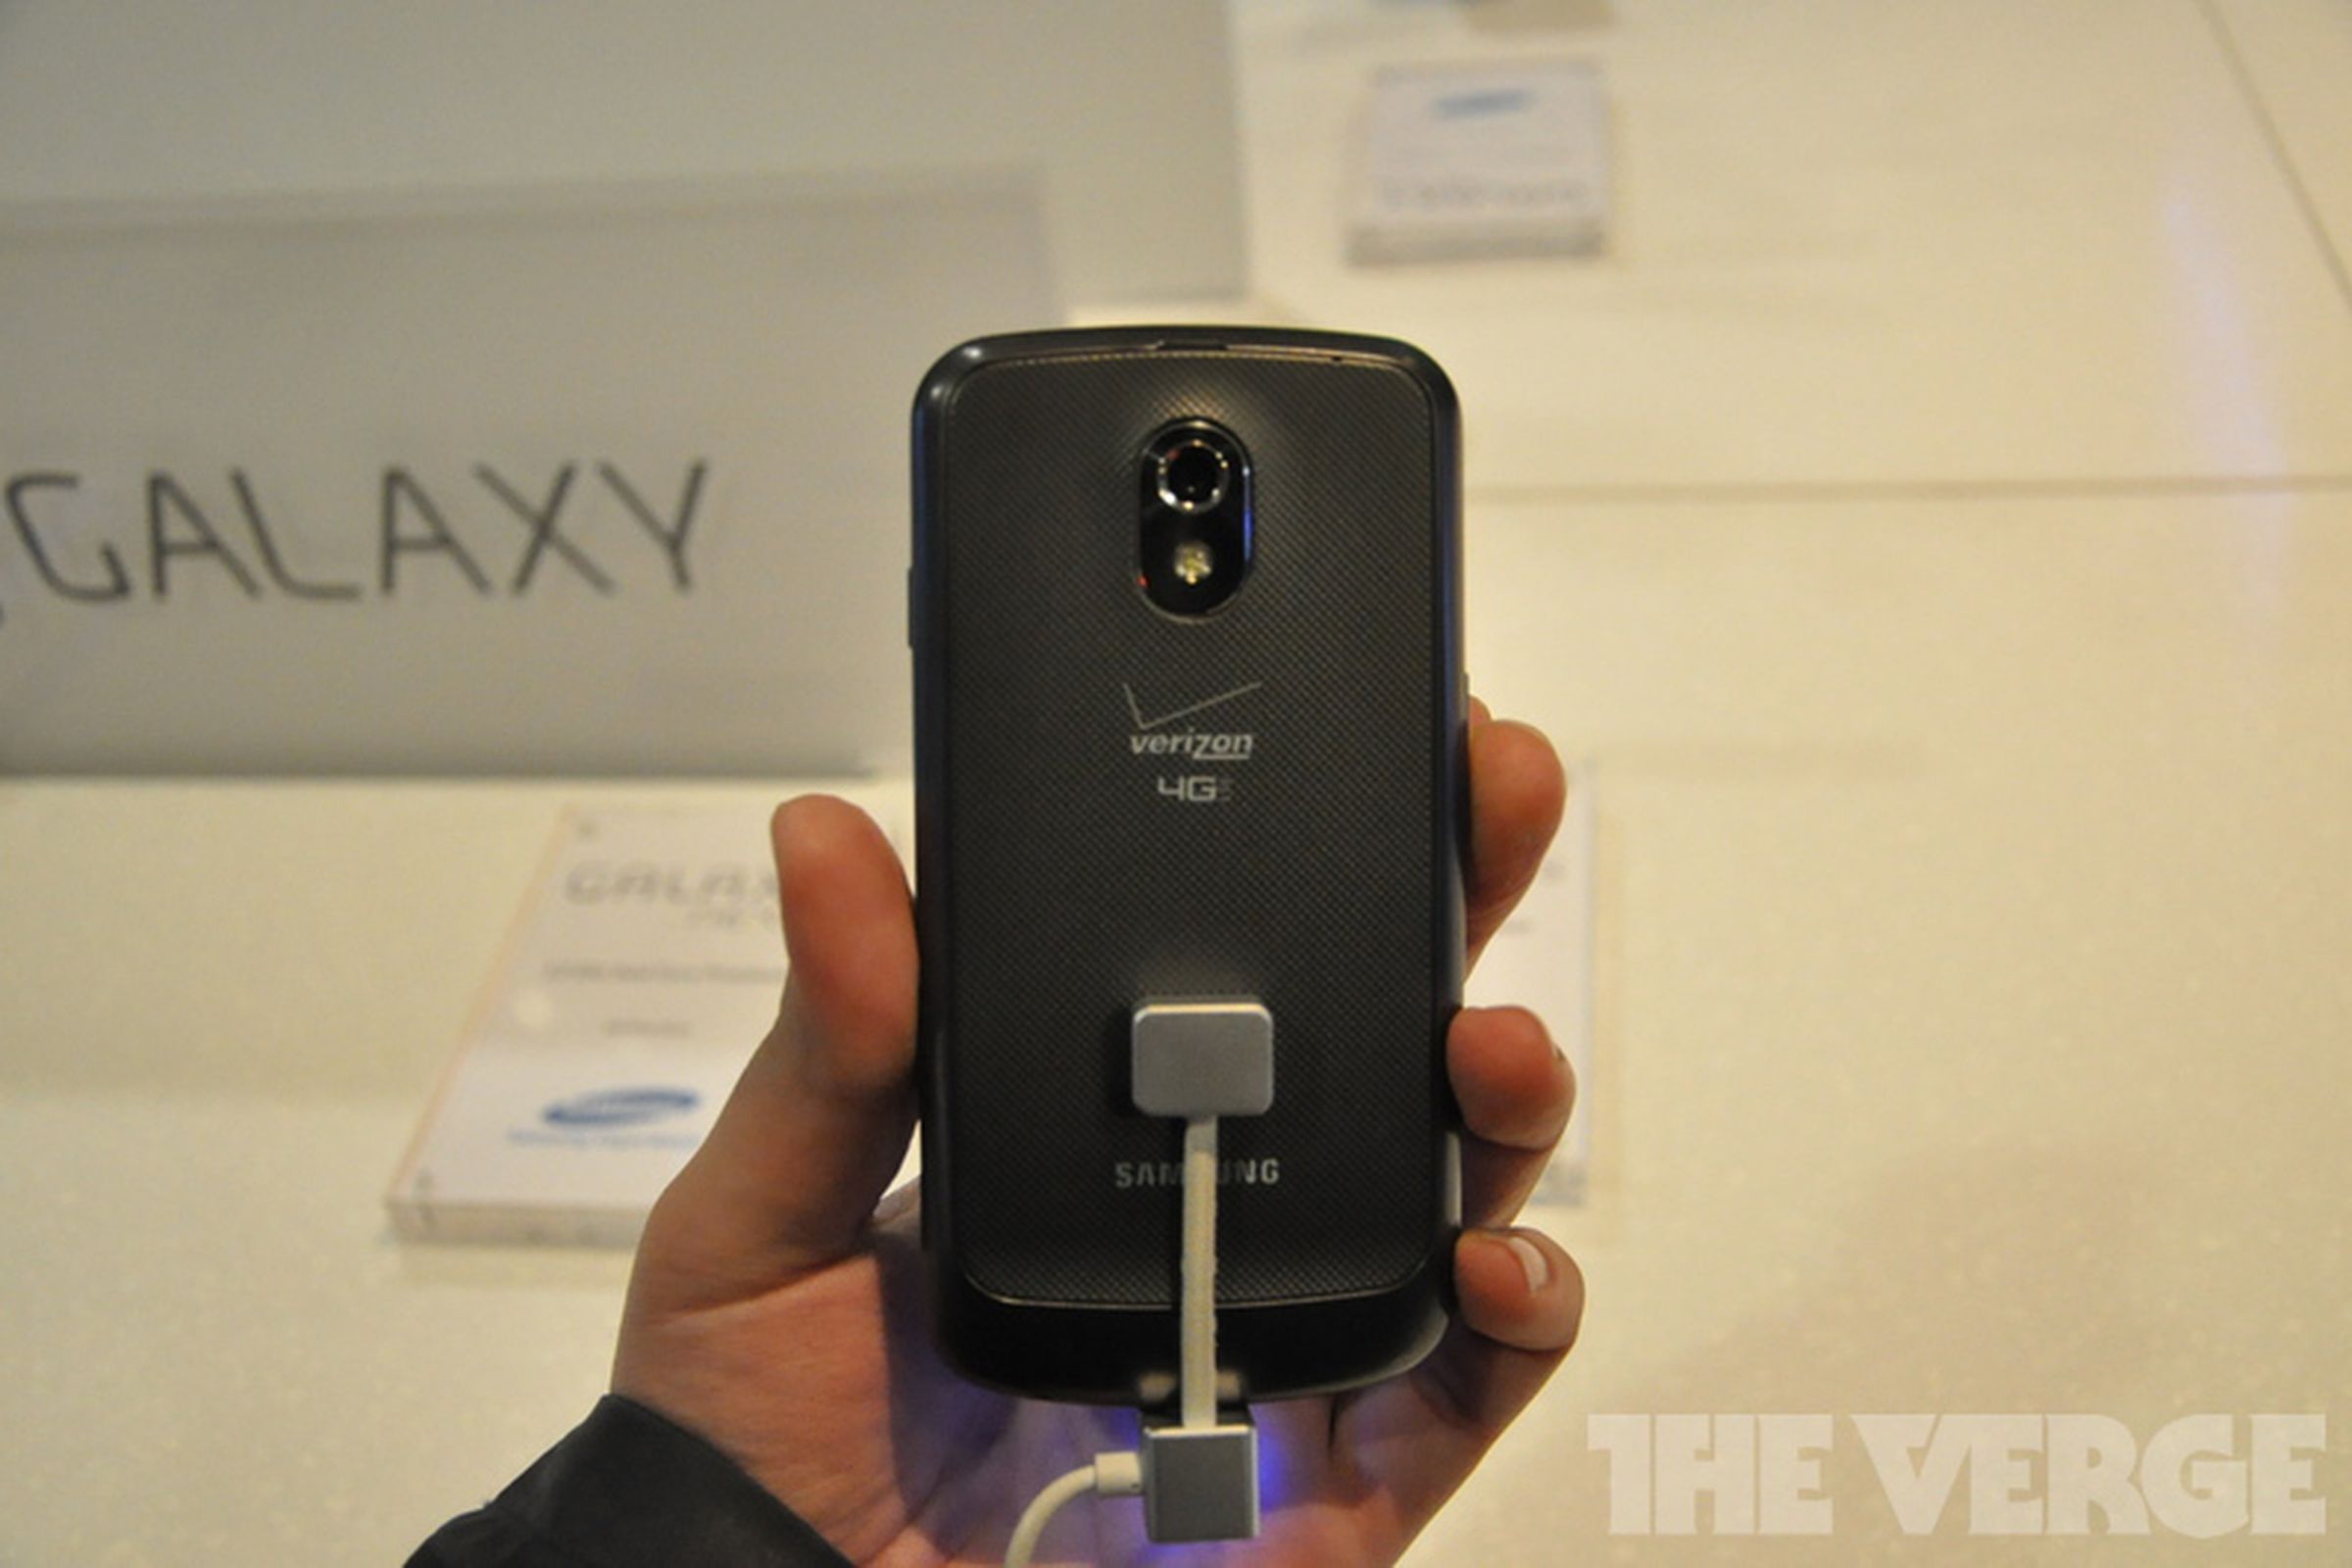 Galaxy Nexus LTE Verizon Wireless Hands-On